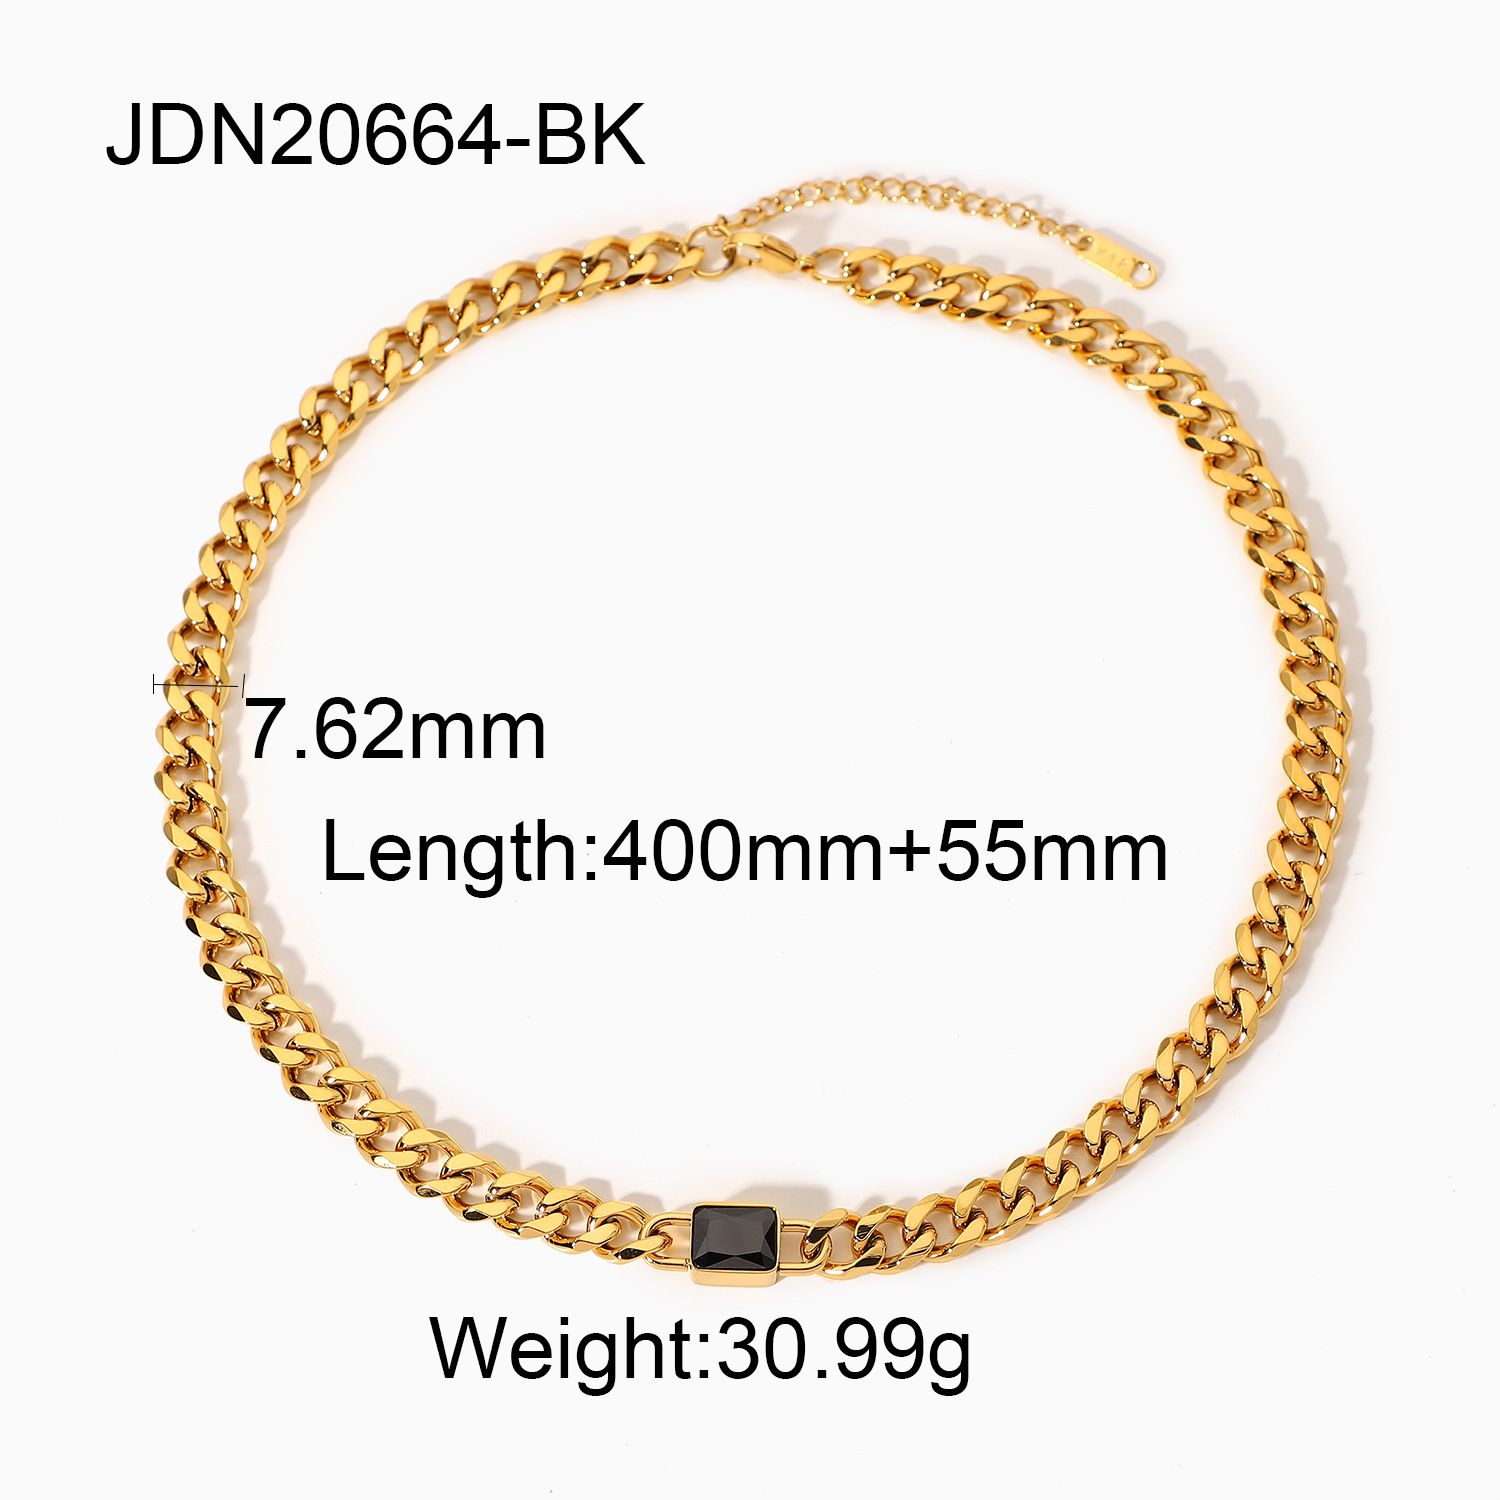 4:JDN20664-BK